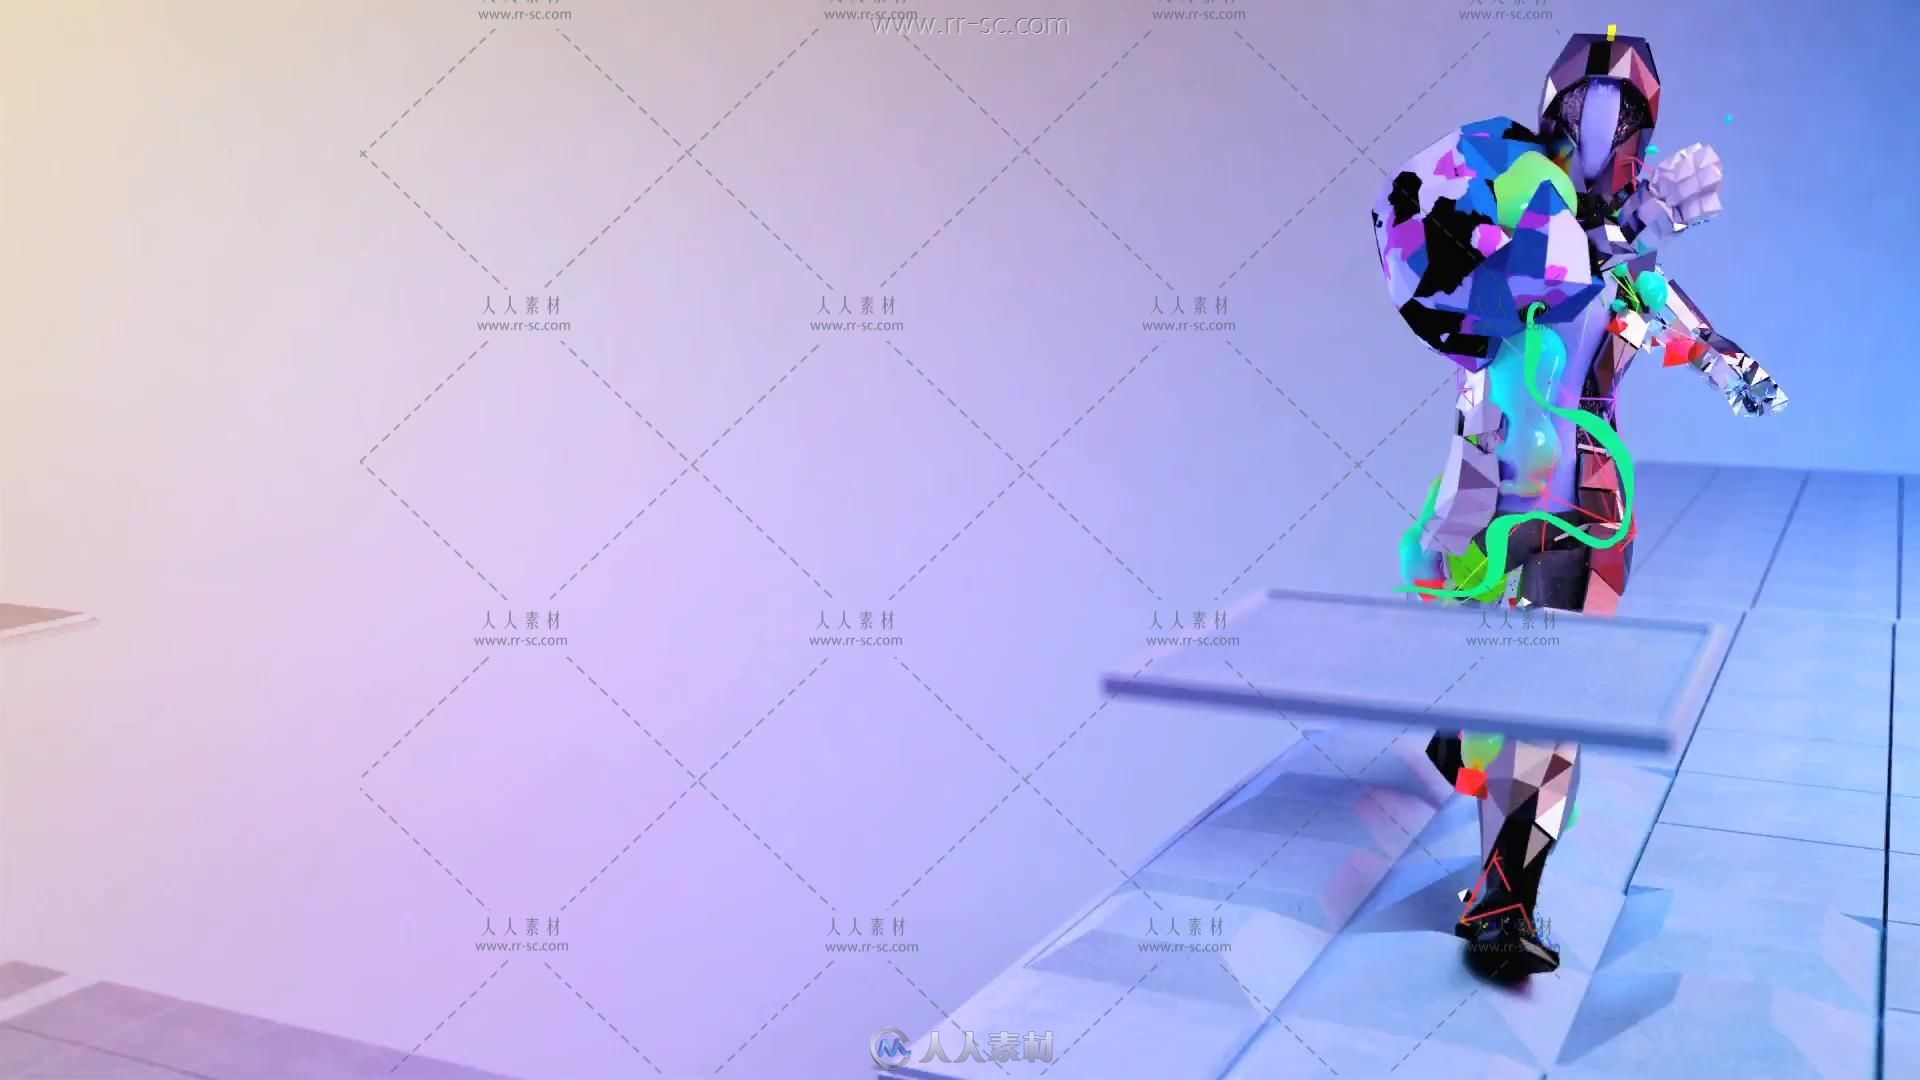 彩色凌亂絲帶酷炫動感機器人舞蹈背景視頻素材